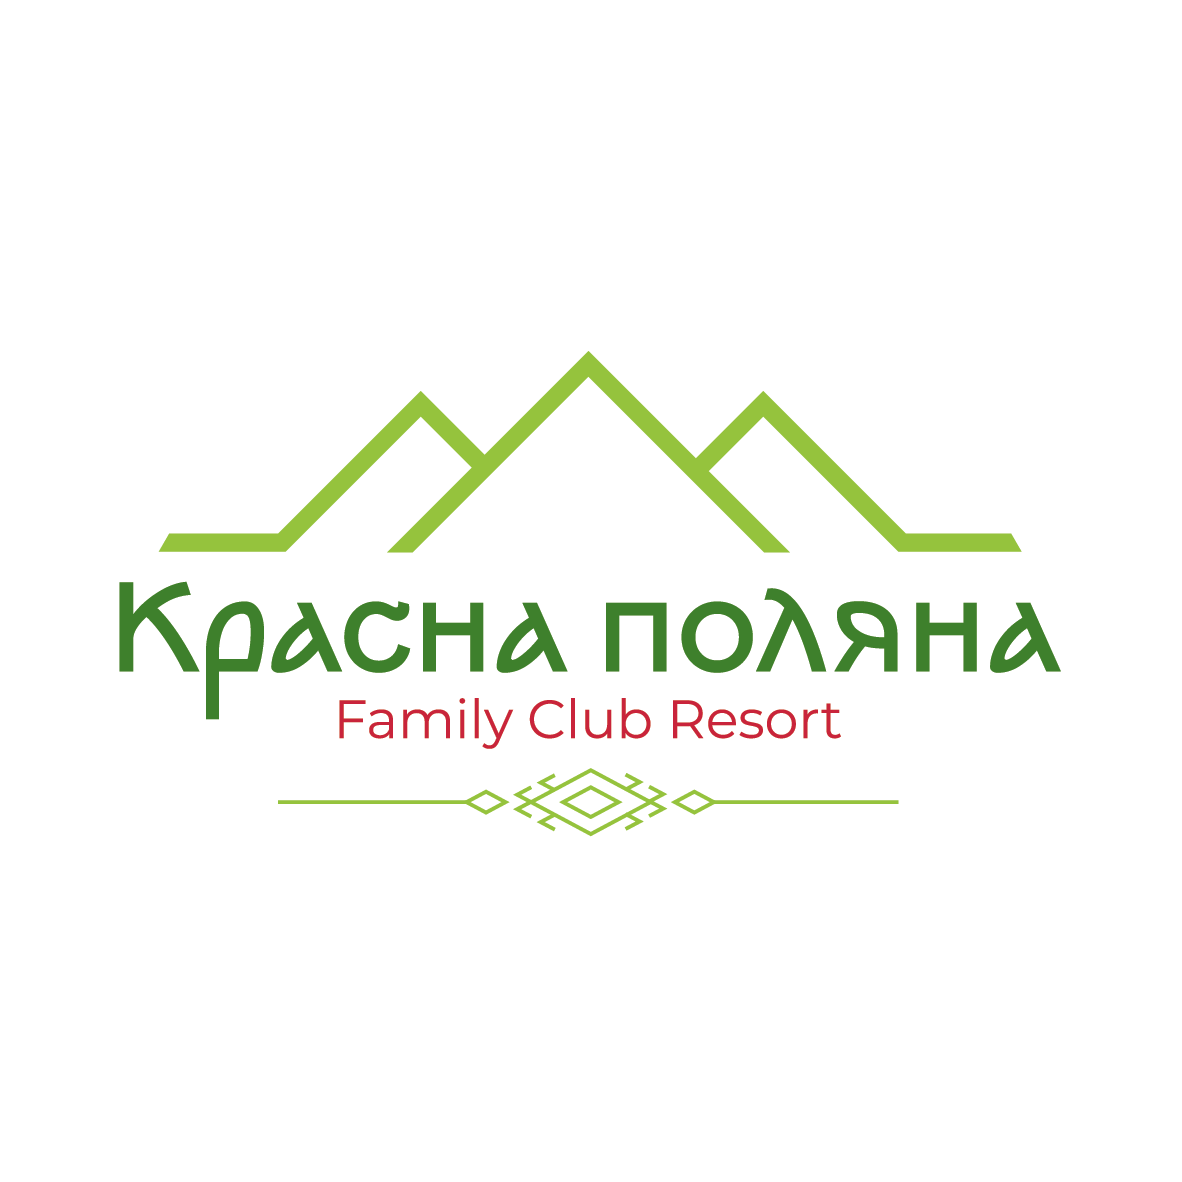 Гостиница в Карпатах - официальный сайт эко-отеля Красна Поляна